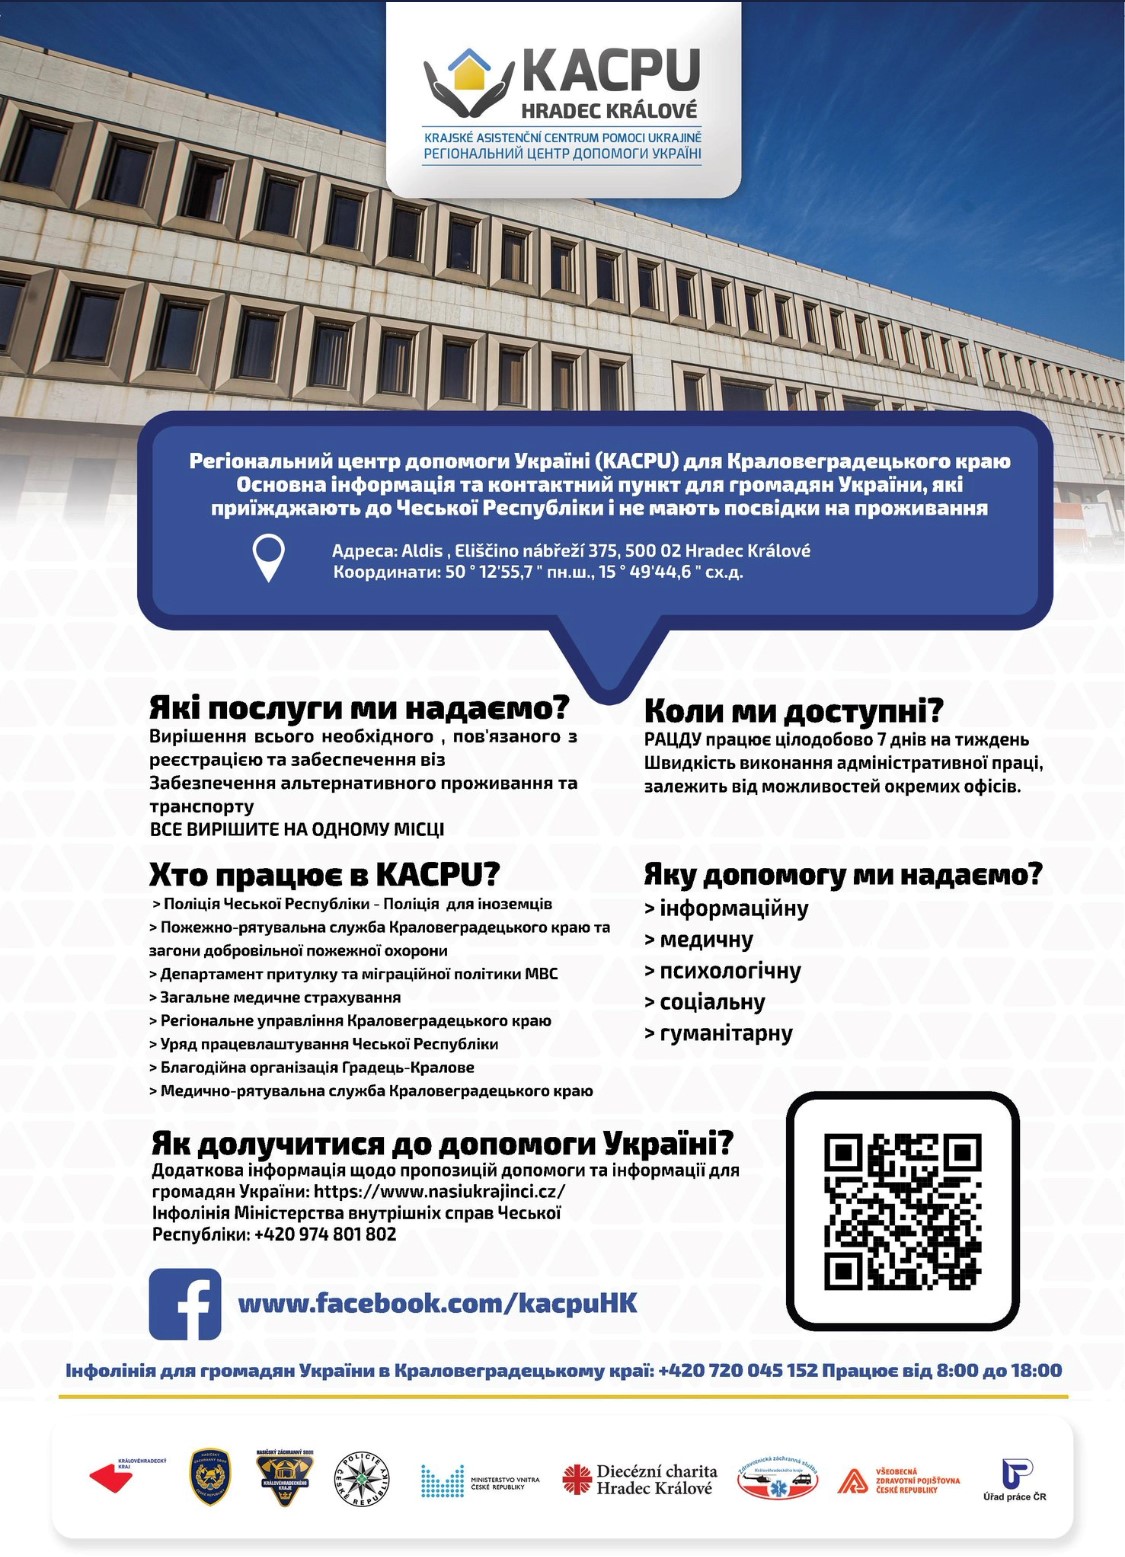 KACPU - infoleták ukrajinsky